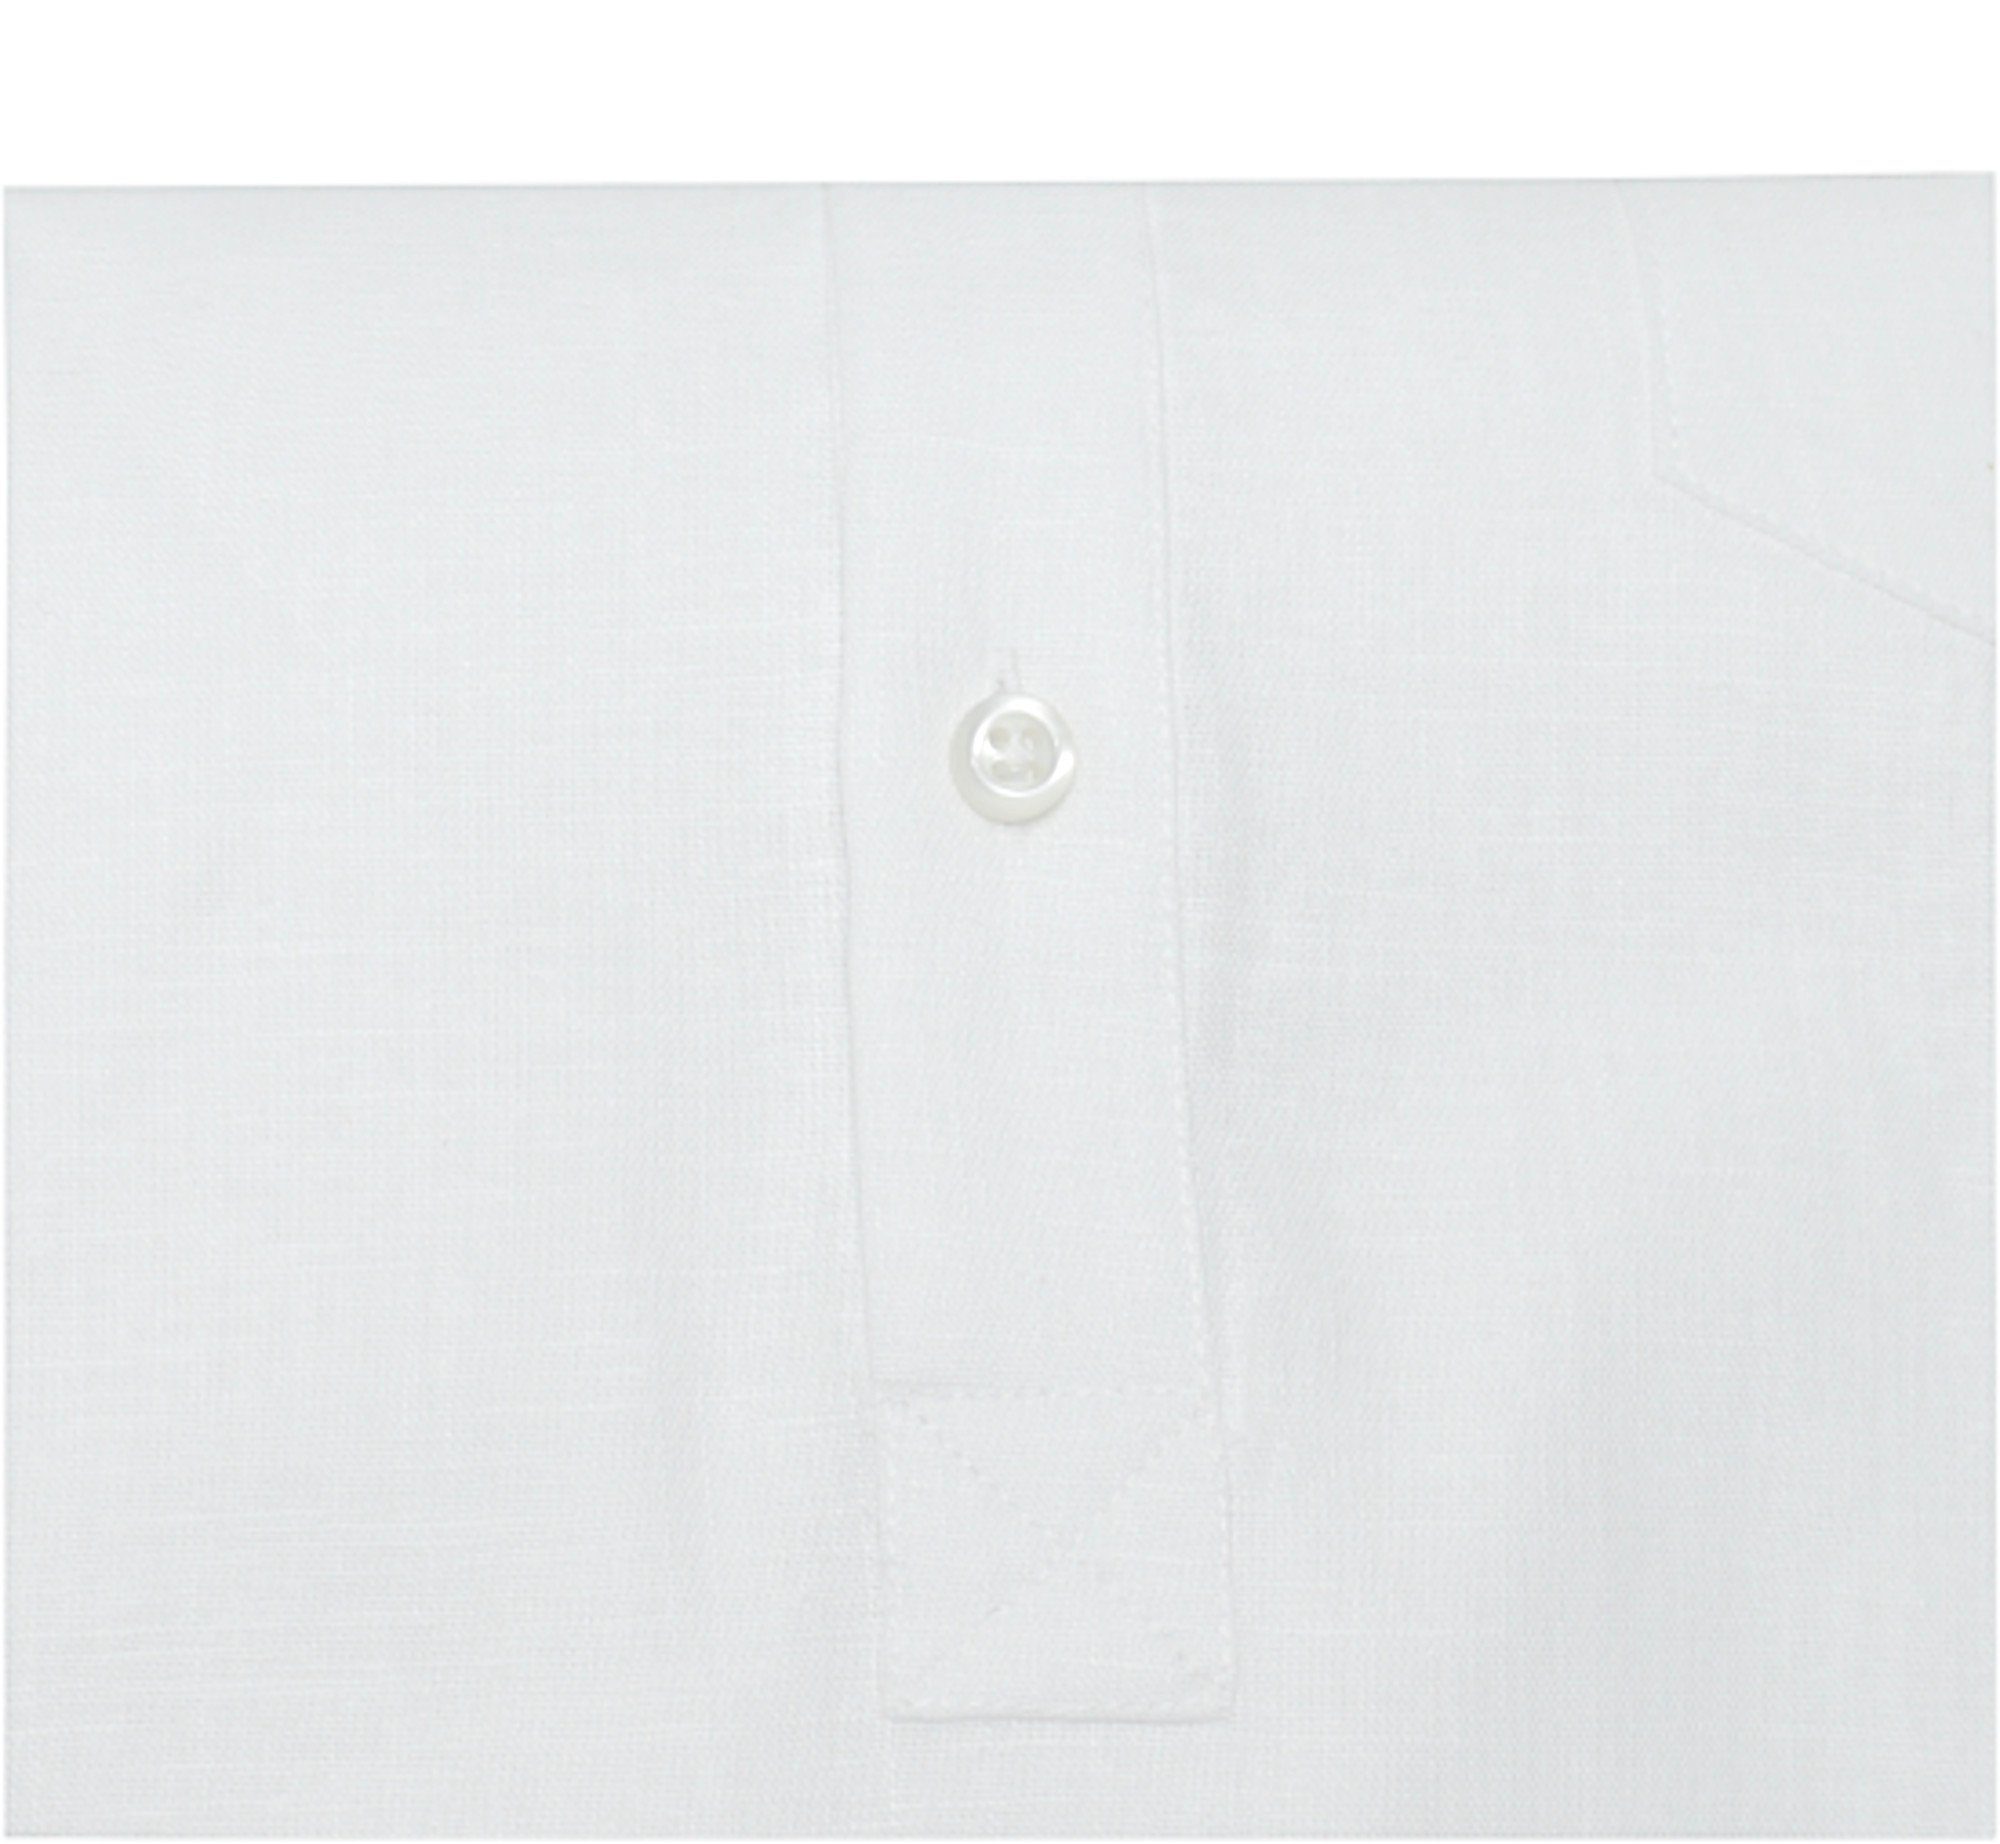 Huber Hemden Leinenhemd HU-0501 Schlupfhemd in 100% Regular weiß Leinen EU Stehkragen, mit Made